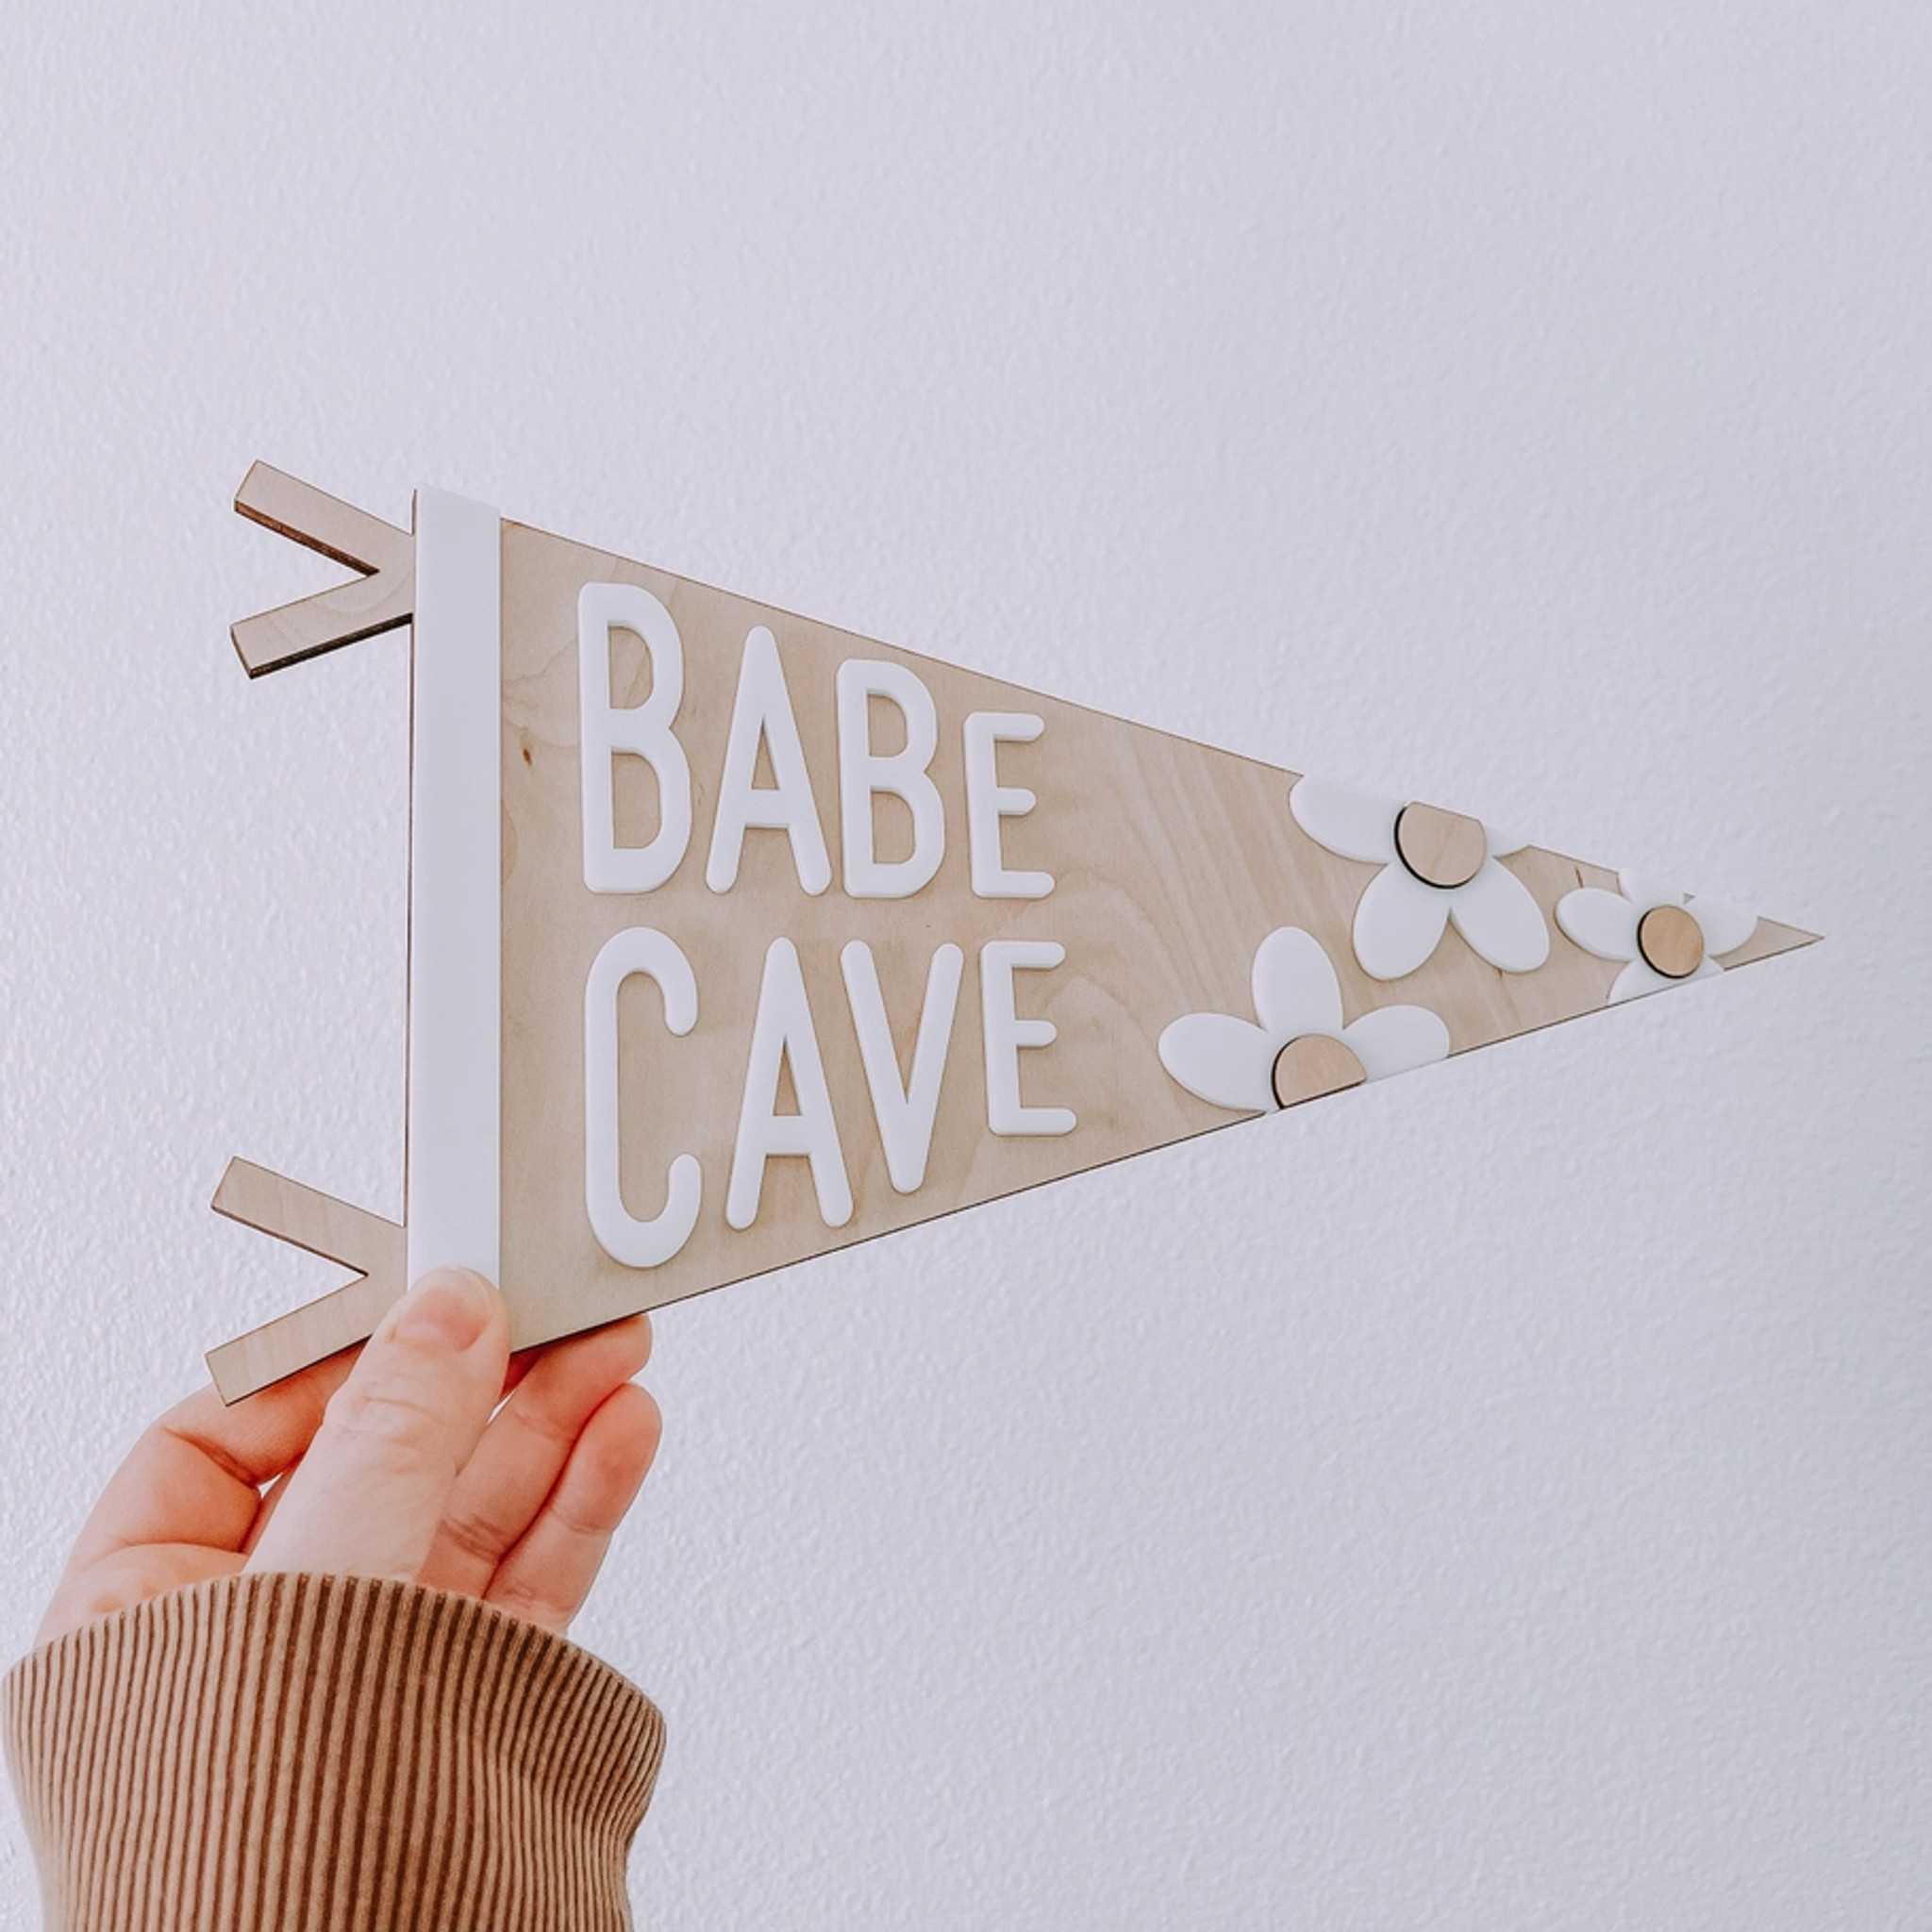 Babe Cave Pennant Banner | Nursery Decor